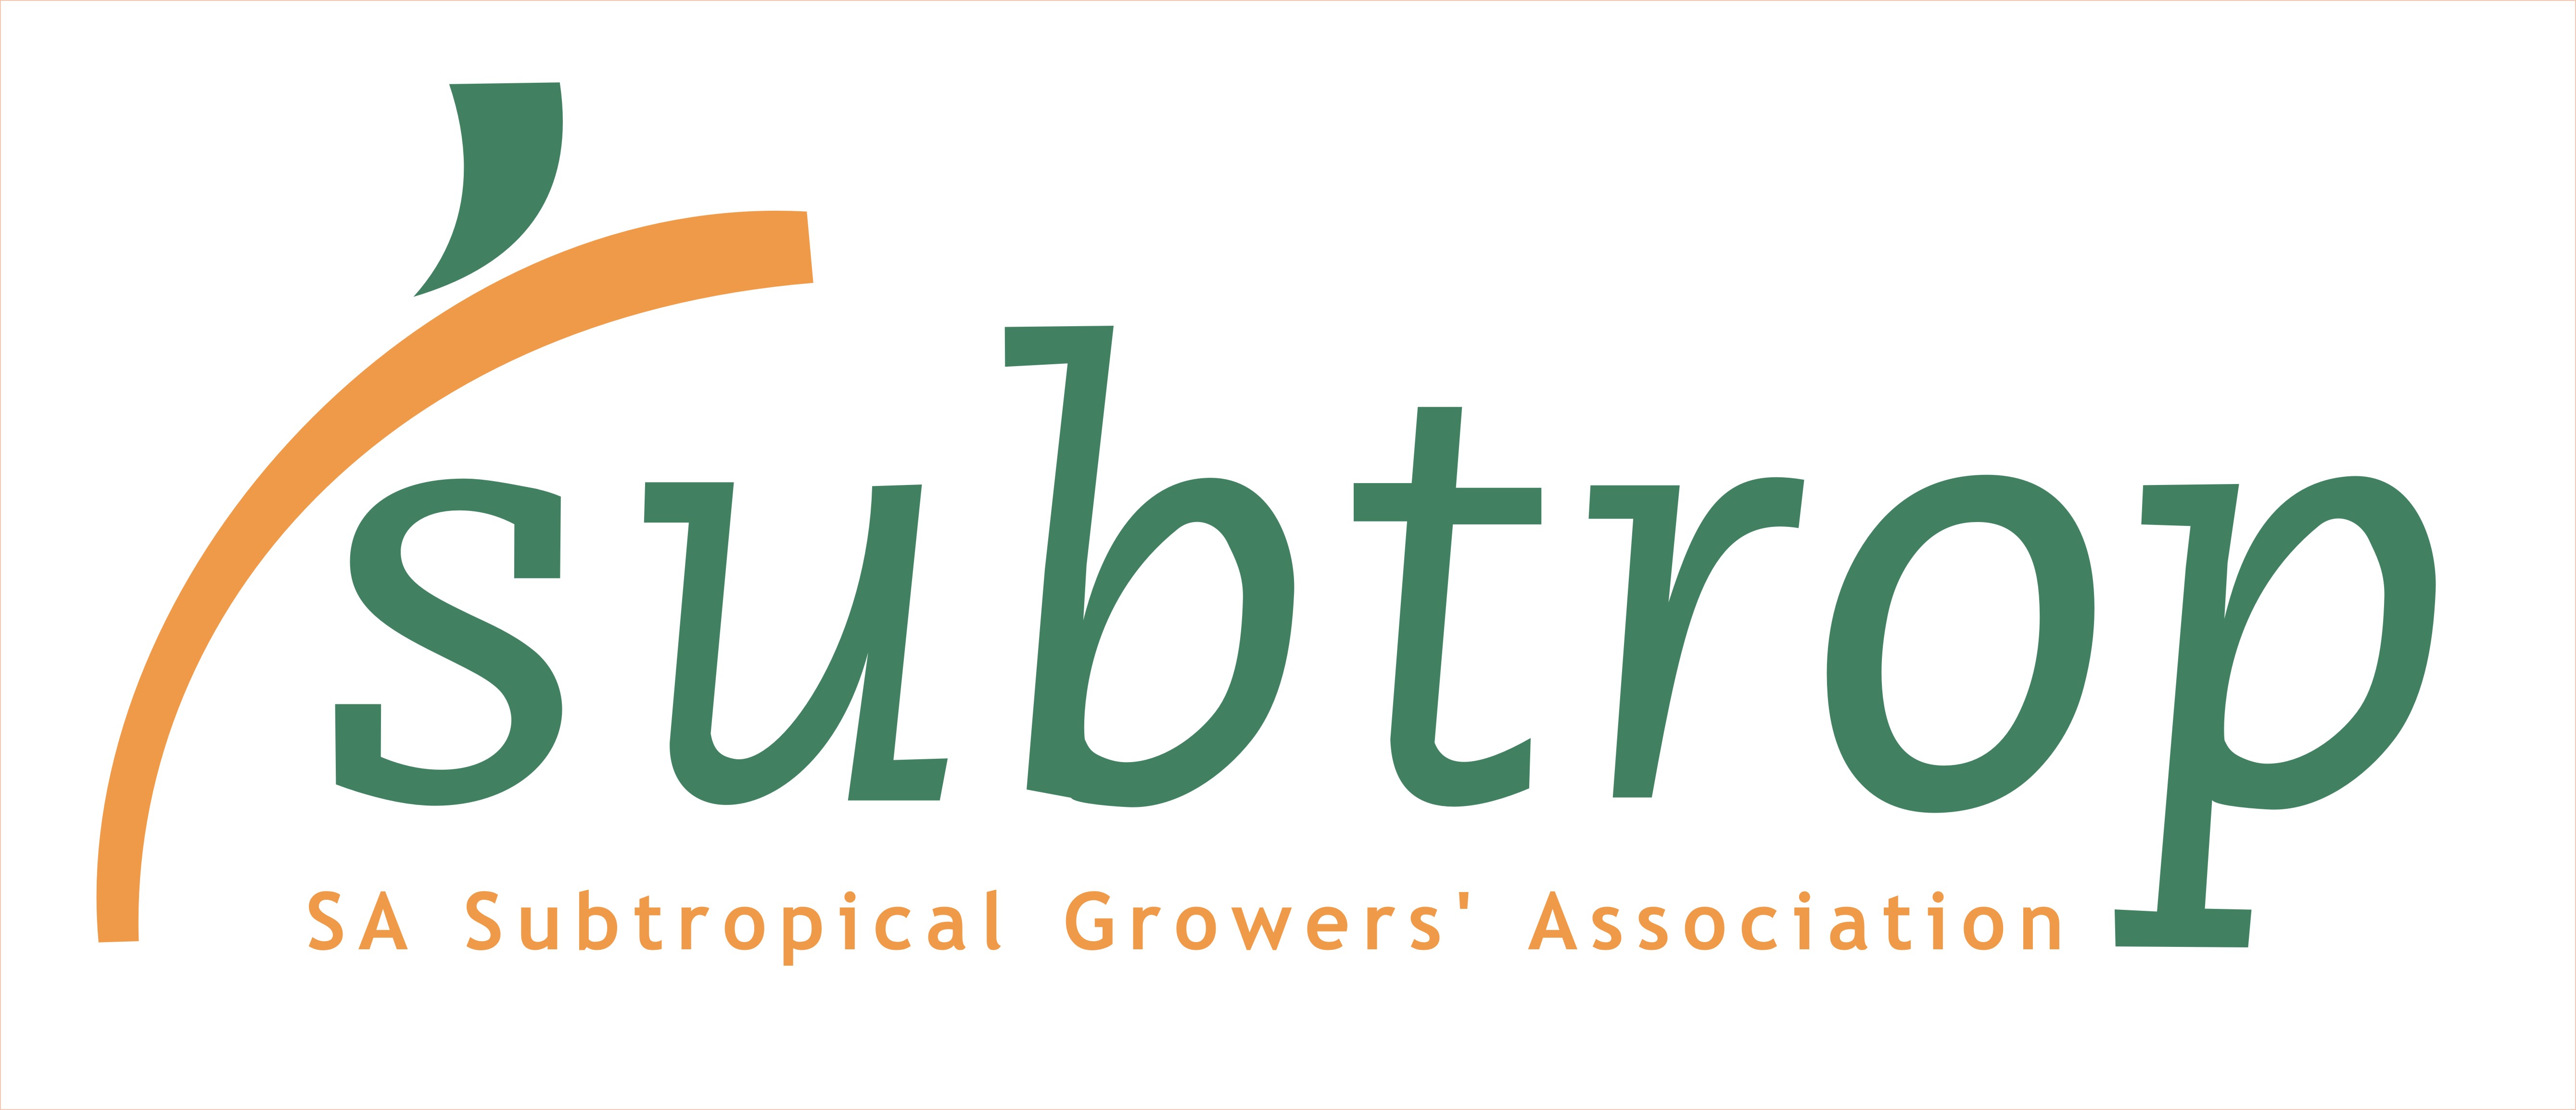 SA Subtrop Growers' Association